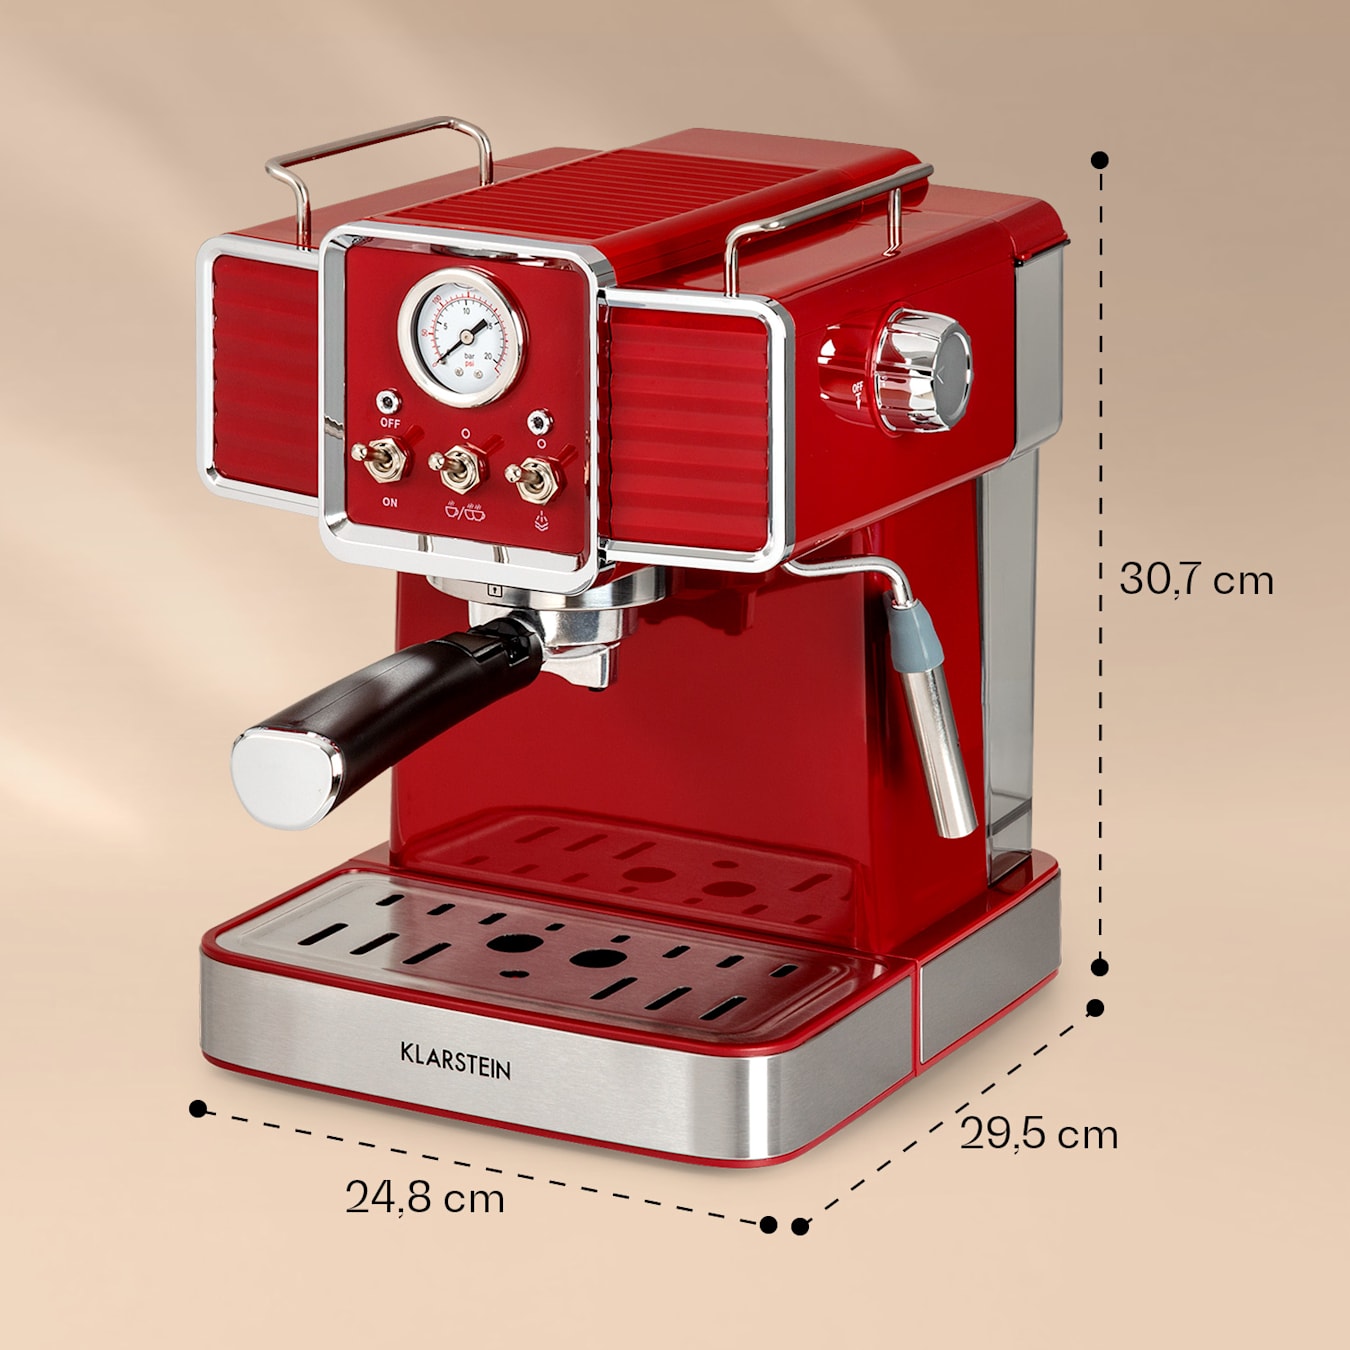 Gusto Classico, Espresso Maker, 1350 Watts, 20 Bar Pressure, Water